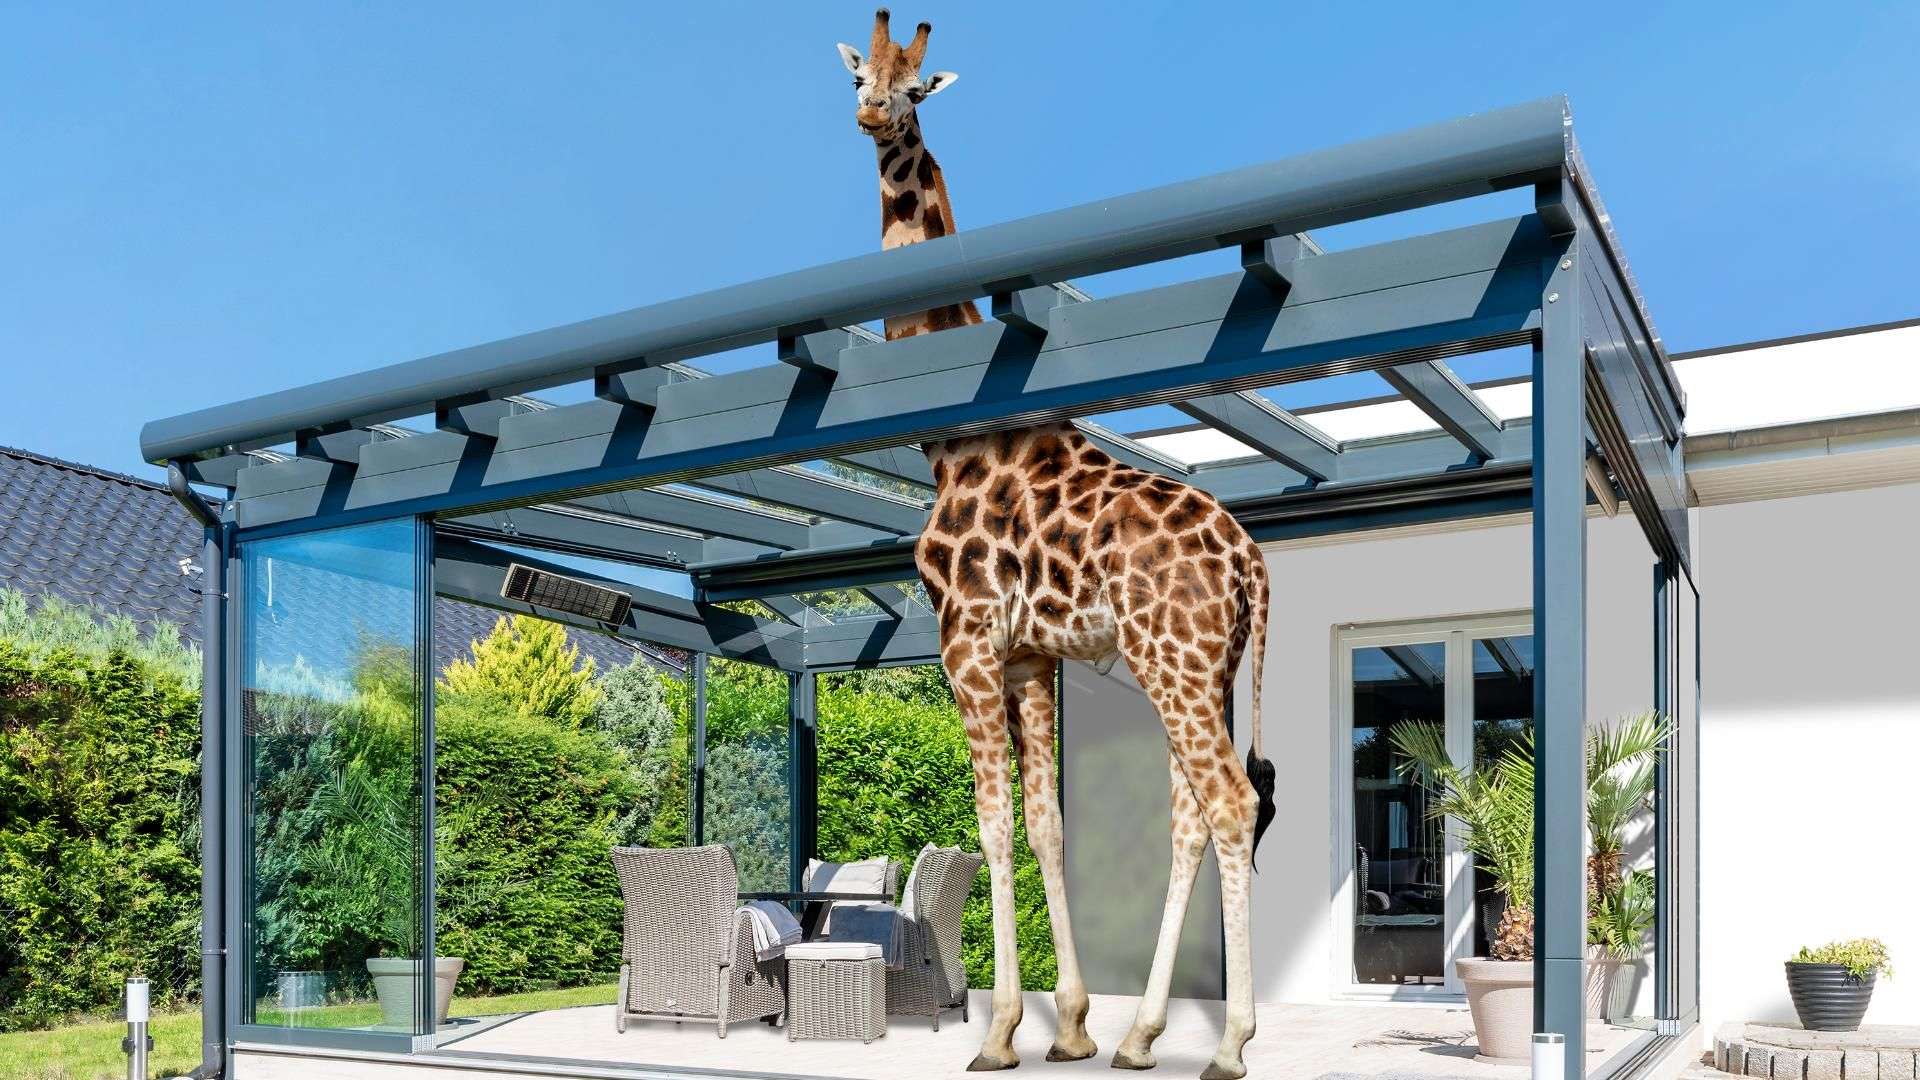 Terrassendach unter dem eine Giraffe steht, der Hals guckt durch das Schiebedach oben raus